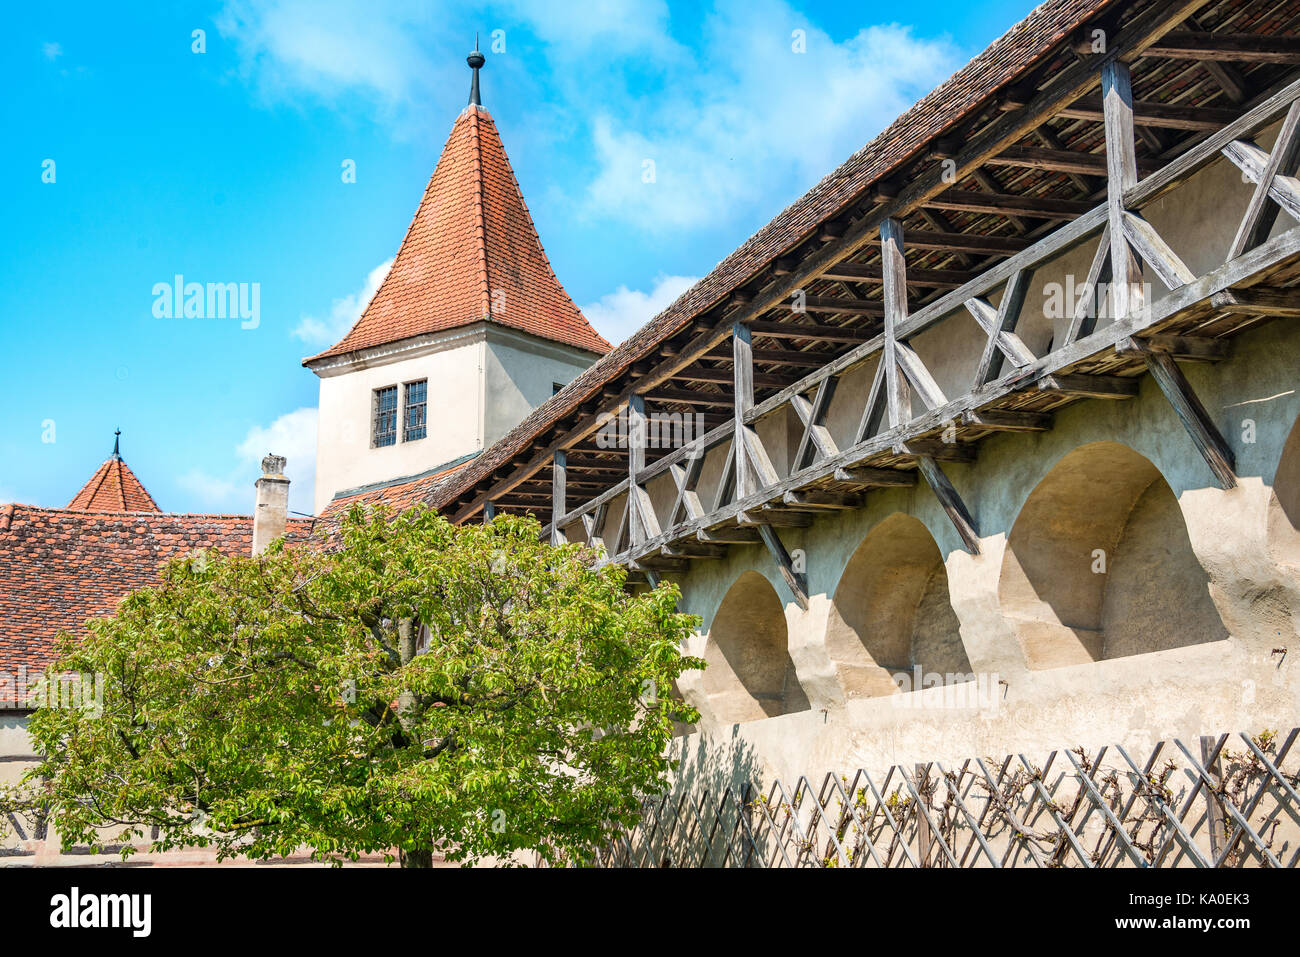 Stadtmauer und Turm, der alten mittelalterlichen Burg, Harburg, Donau-Ries, Bayern, Deutschland Stockfoto